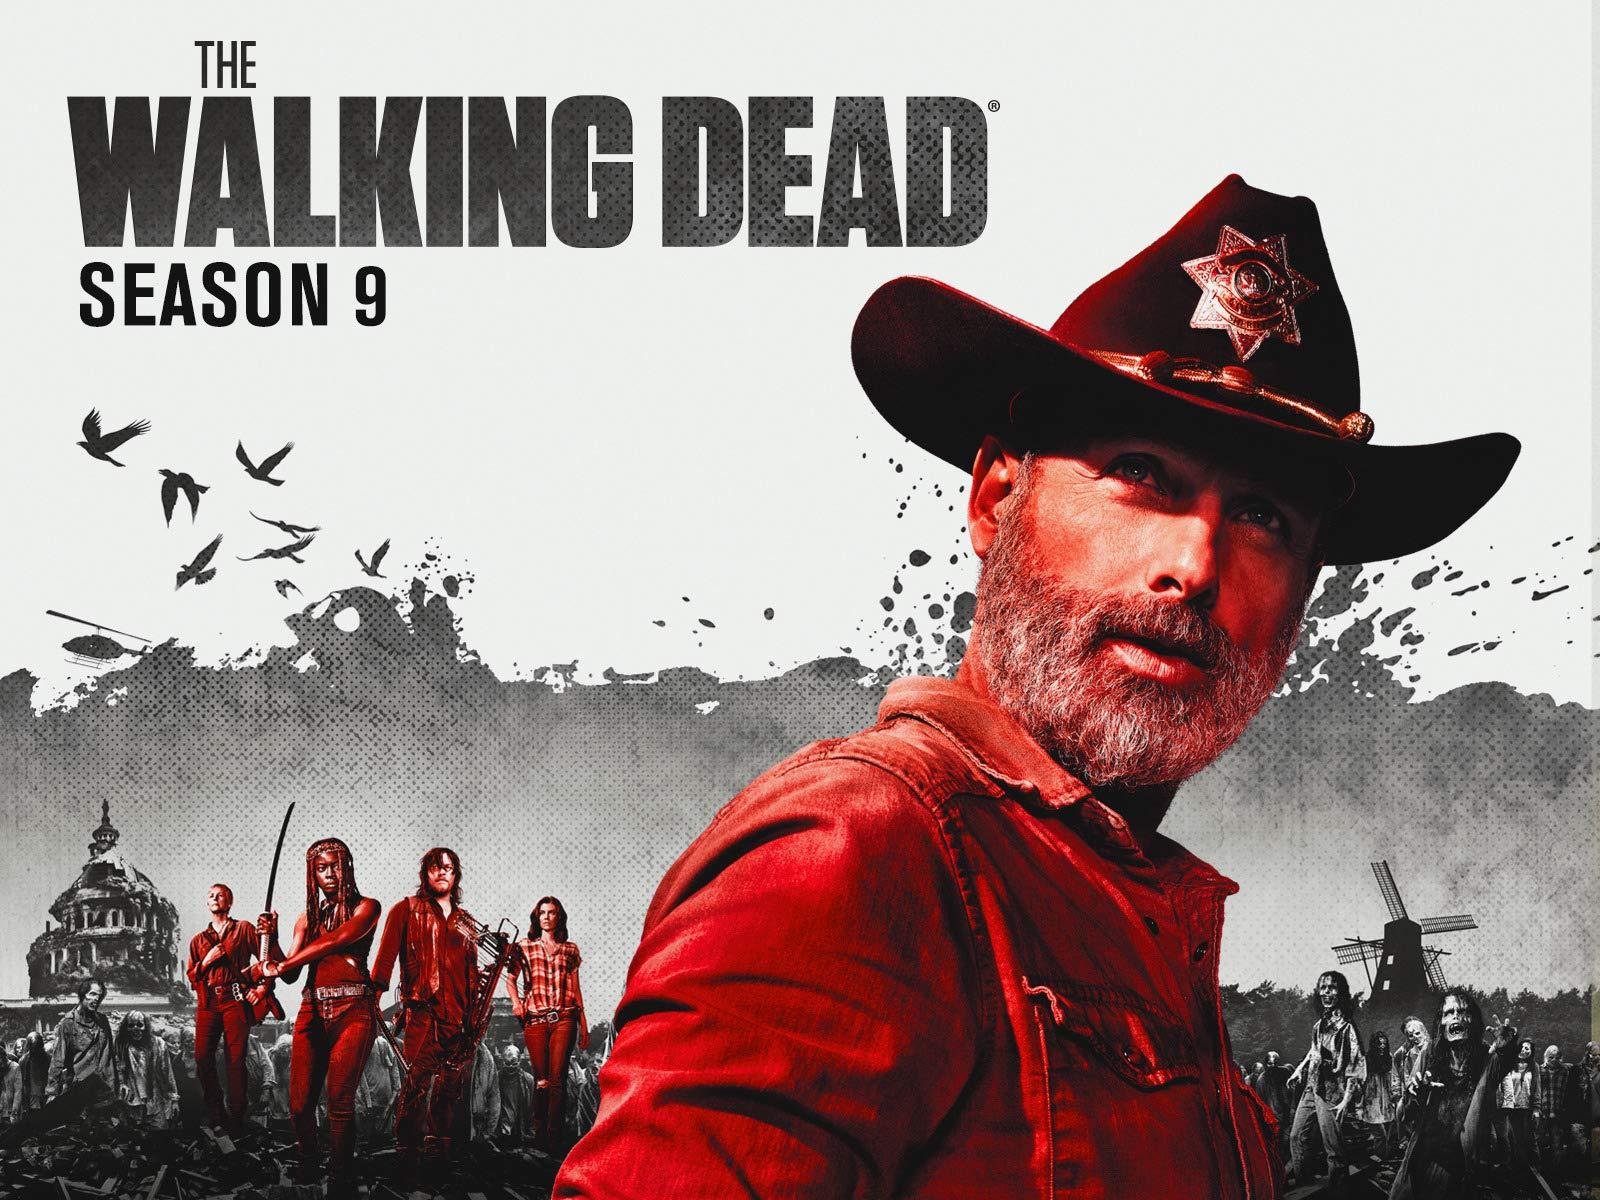 Amazon.co.uk: Watch The Walking Dead Season 9